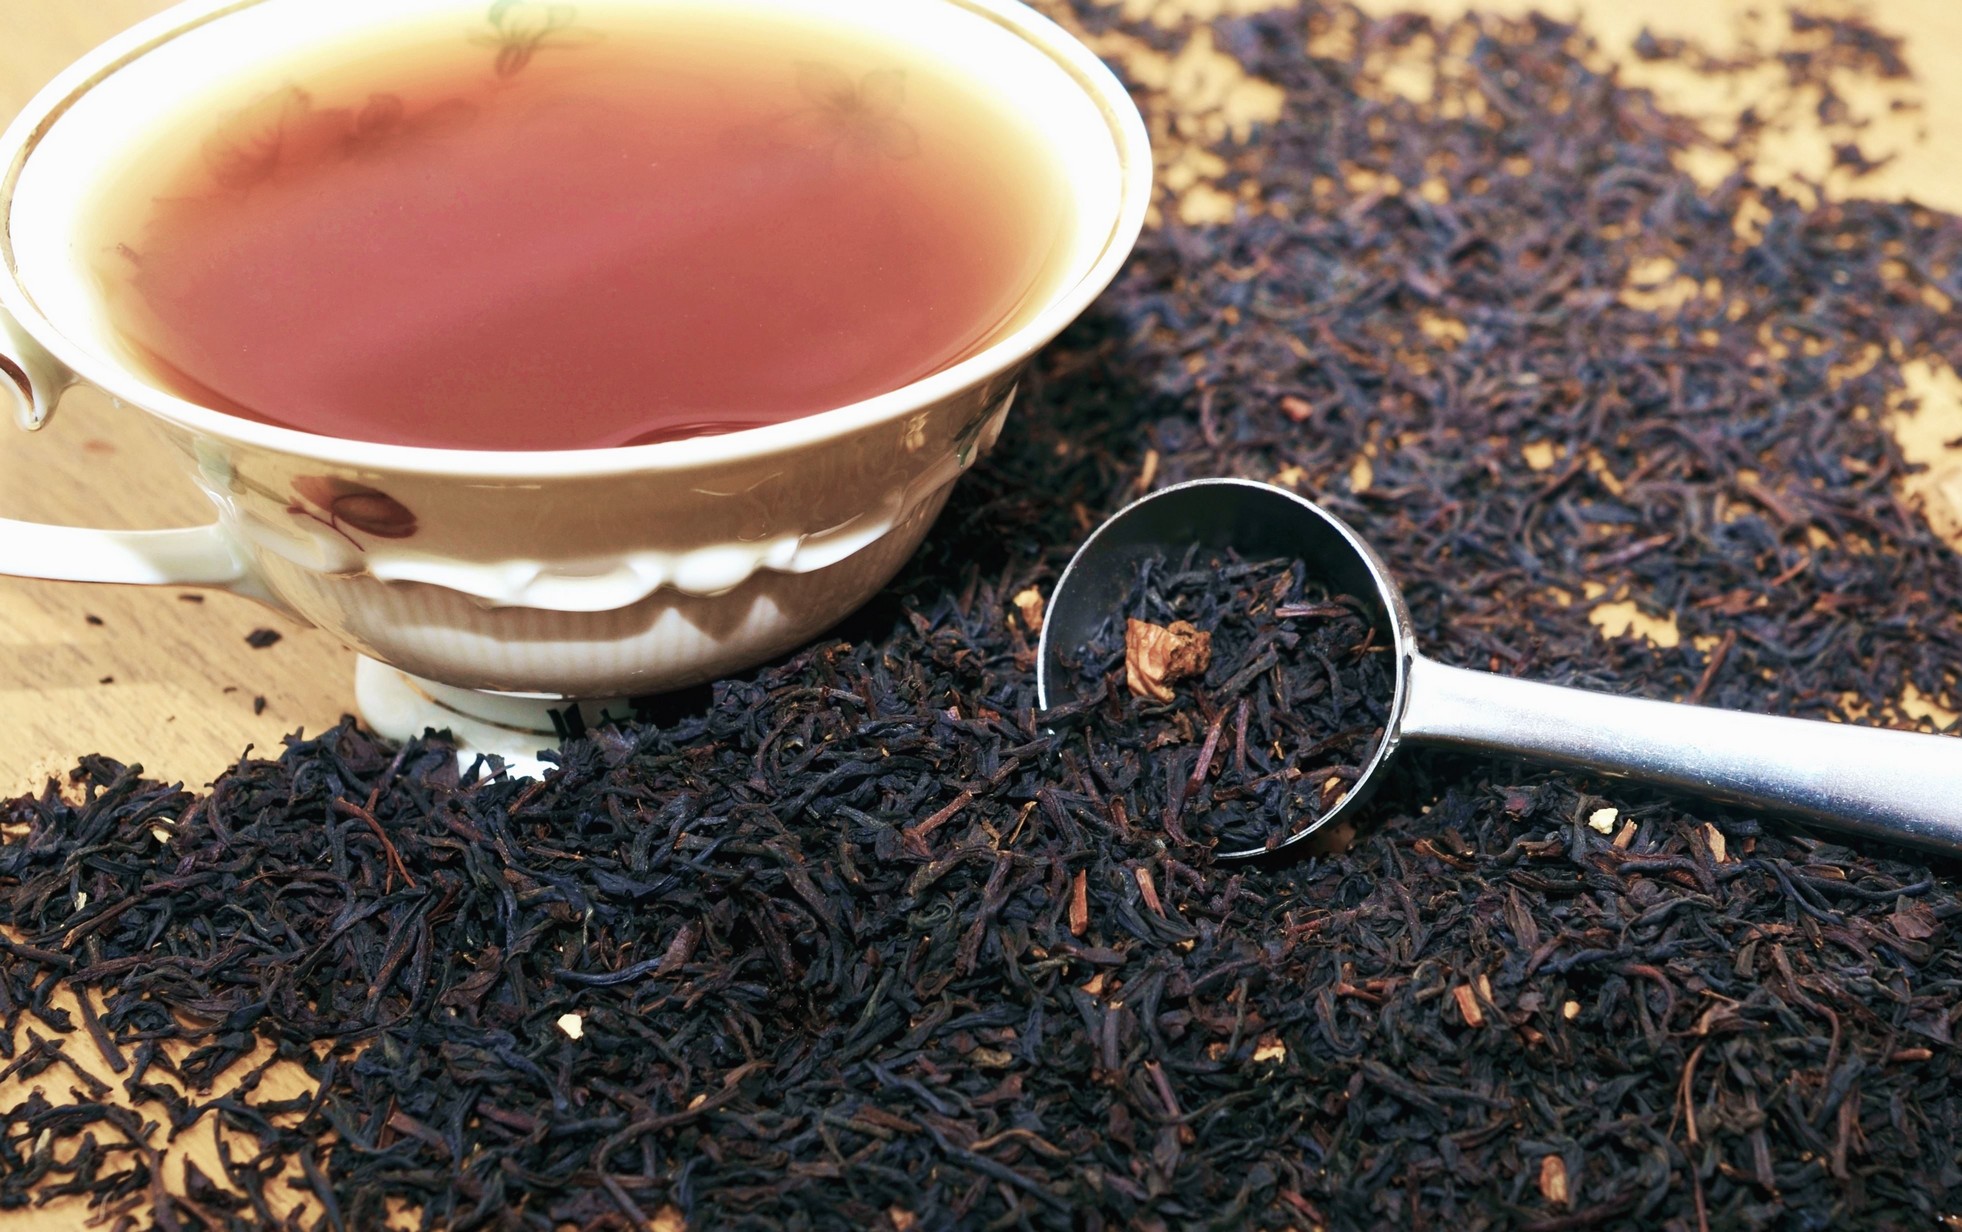 ceai negru uscat varsat pe masa langa o ceasca cu ceai infuzat